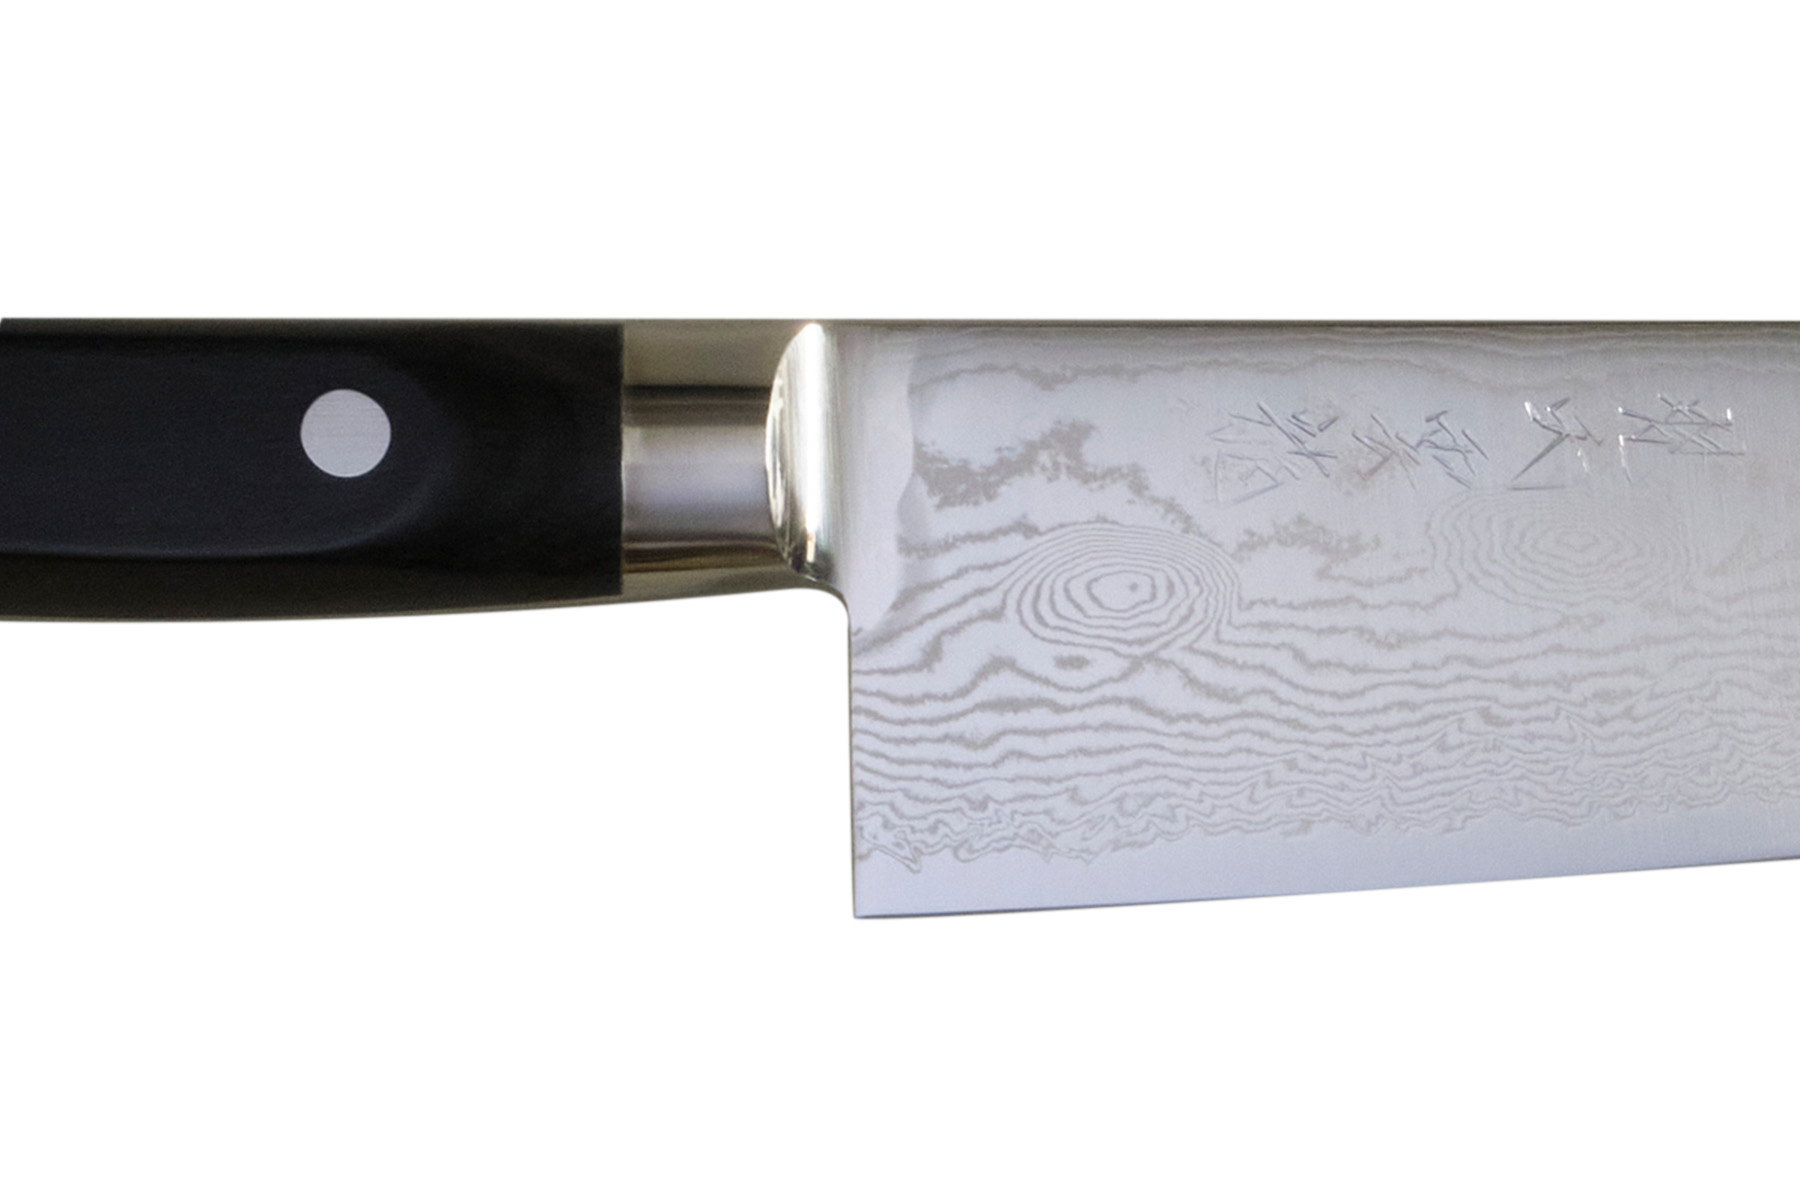 Couteau japonais Ryusen Bonten Unryu - Couteau santoku 17 cm